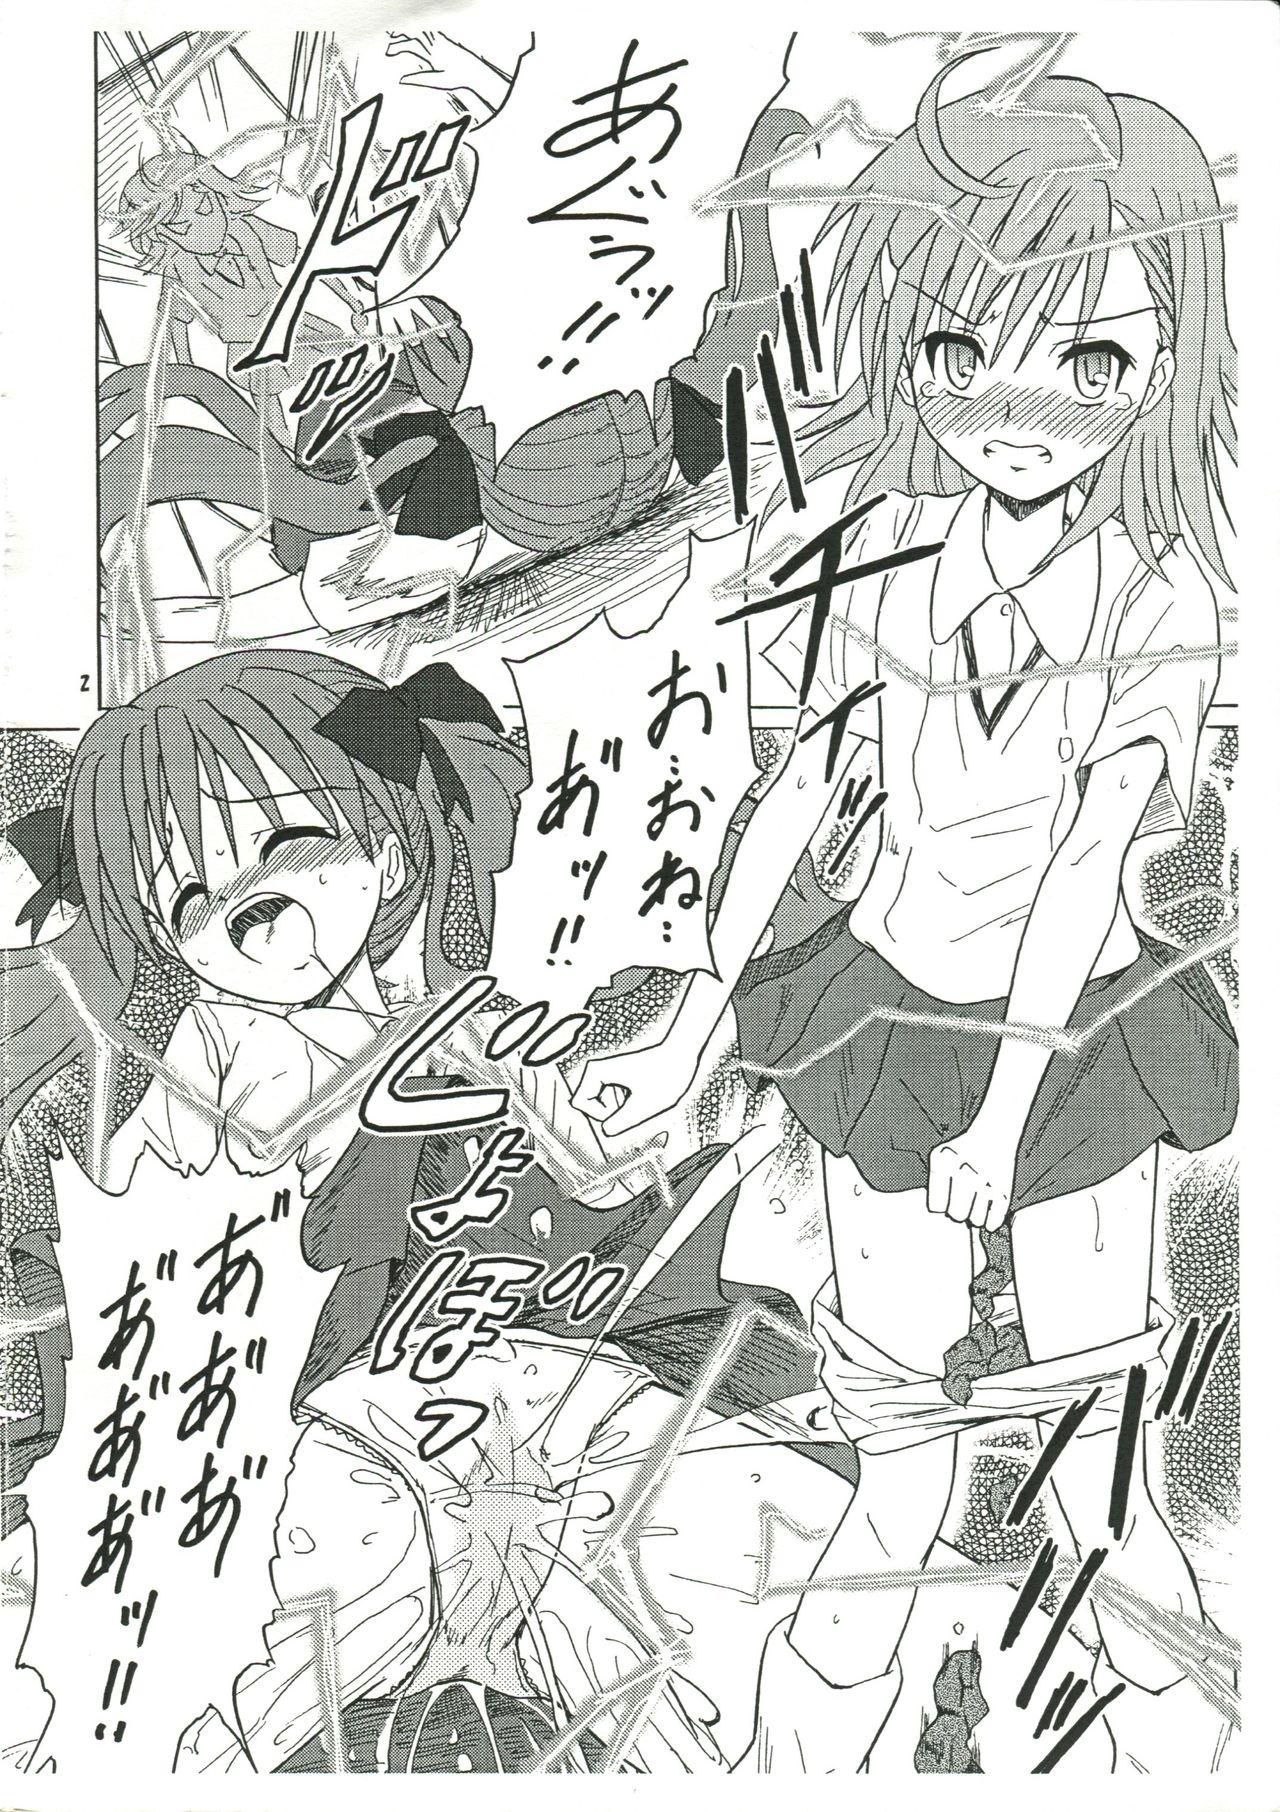 Sis Chirashi no Ura Vol. 3 - Toaru kagaku no railgun Toaru majutsu no index Missionary Porn - Page 3